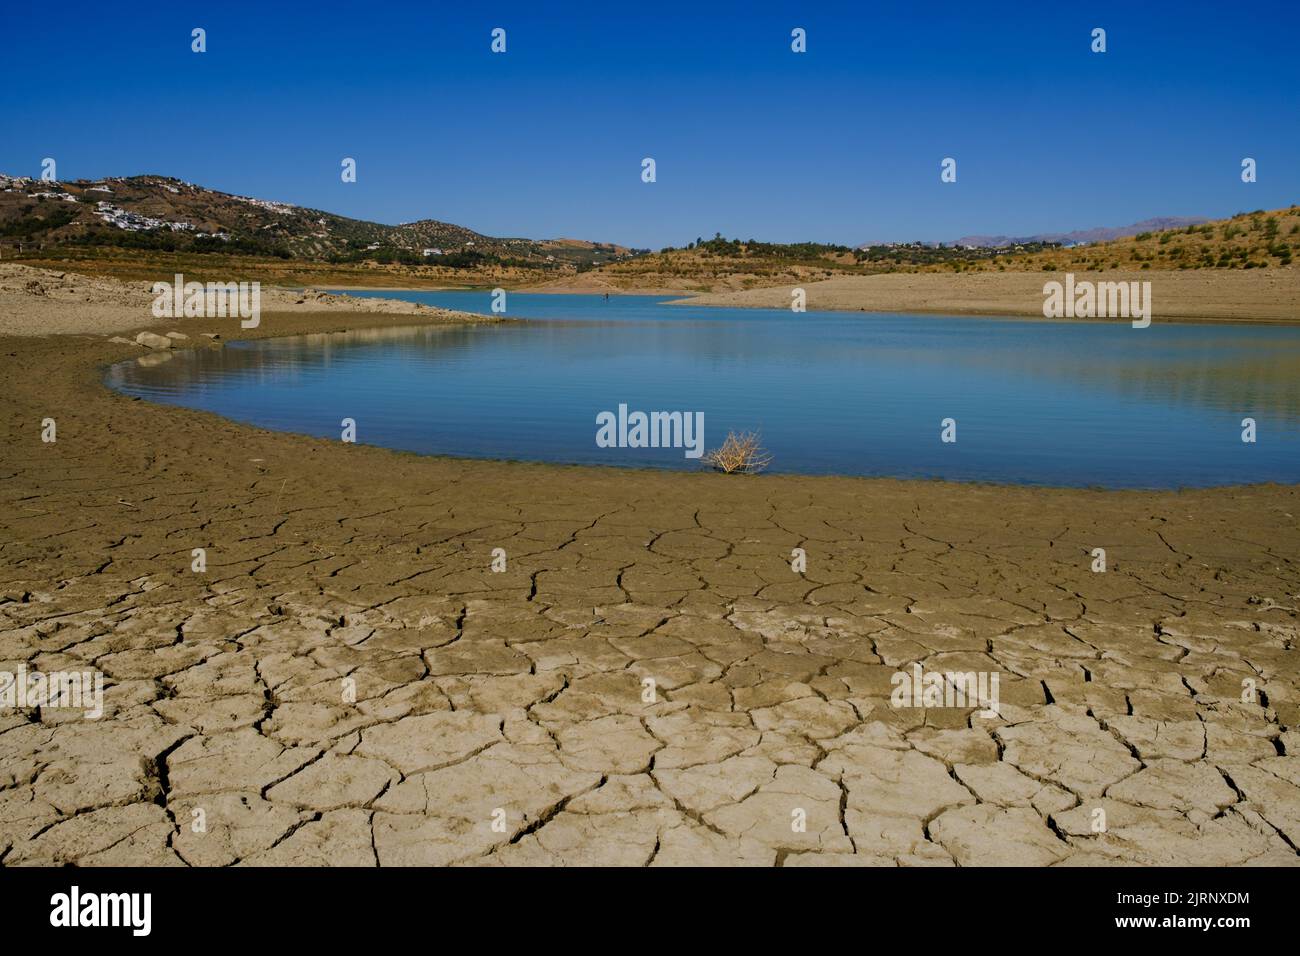 Trockenheit und sehr niedriger Wasserstand im Vinuela-Stausee in einer sehr trockenen Region von Axarquia, Malaga, Spanien Stockfoto